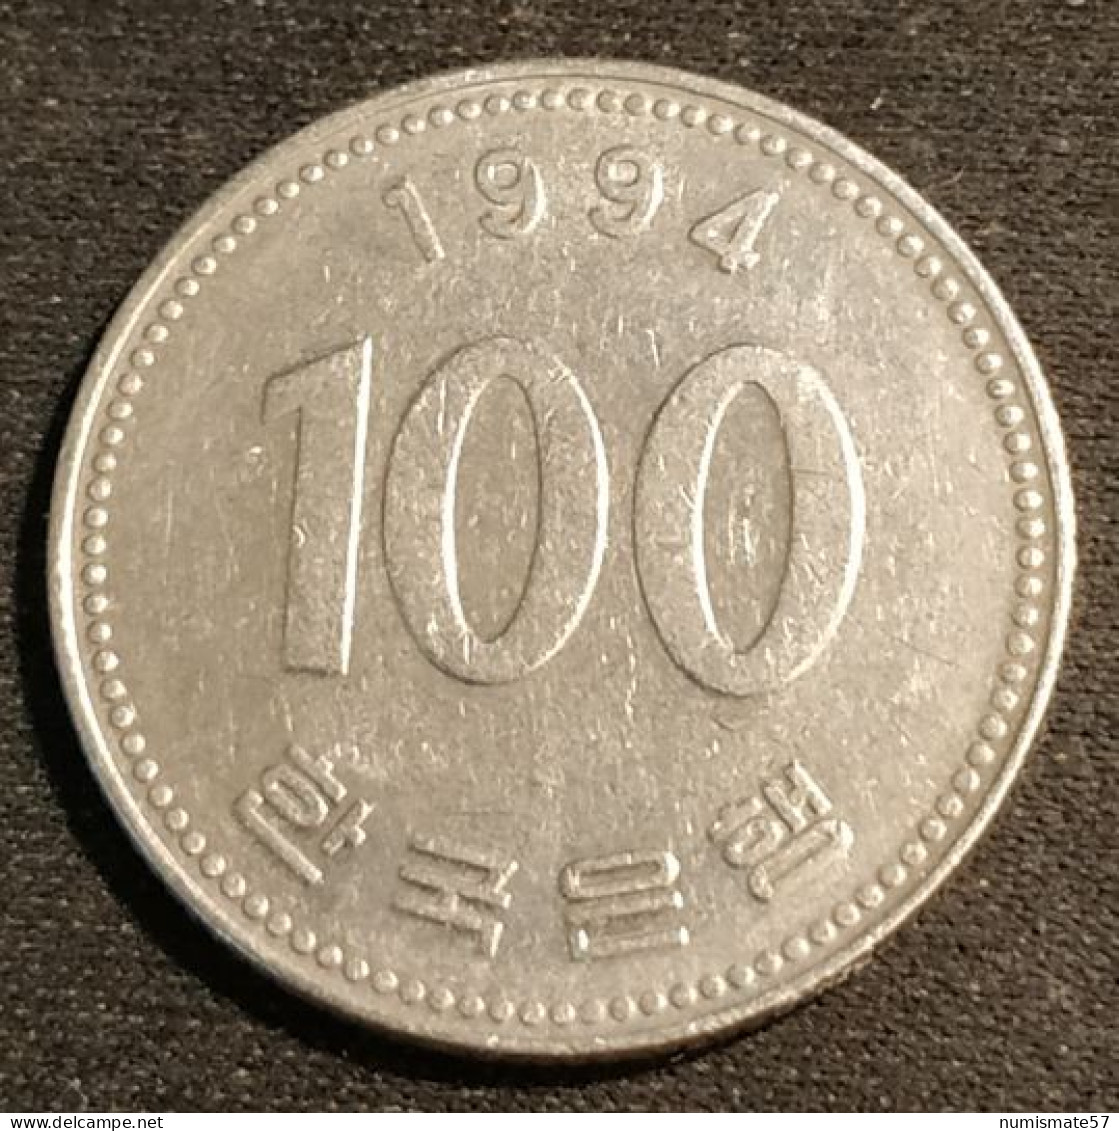 COREE DU SUD - SOUTH KOREA - 100 WON 1994 - KM 35 - Korea, South